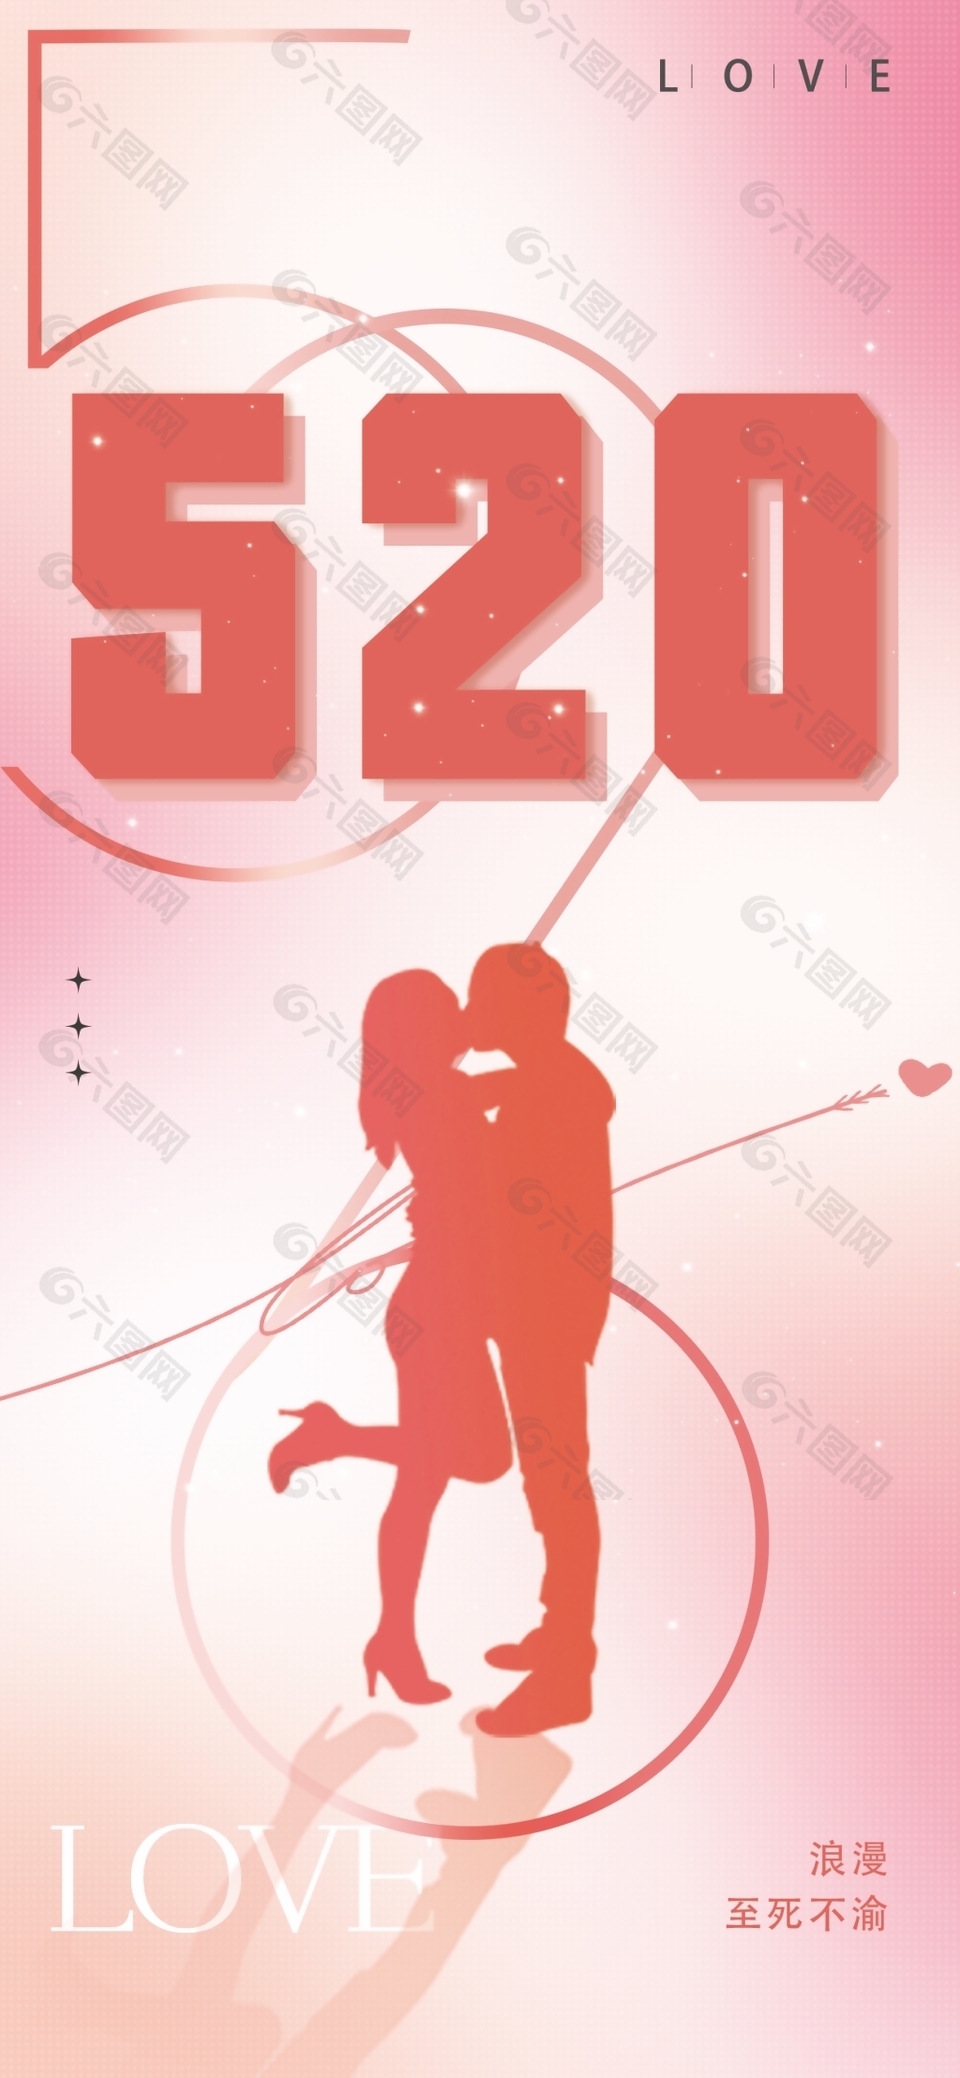 浪漫至死不渝幸福520主题海报设计